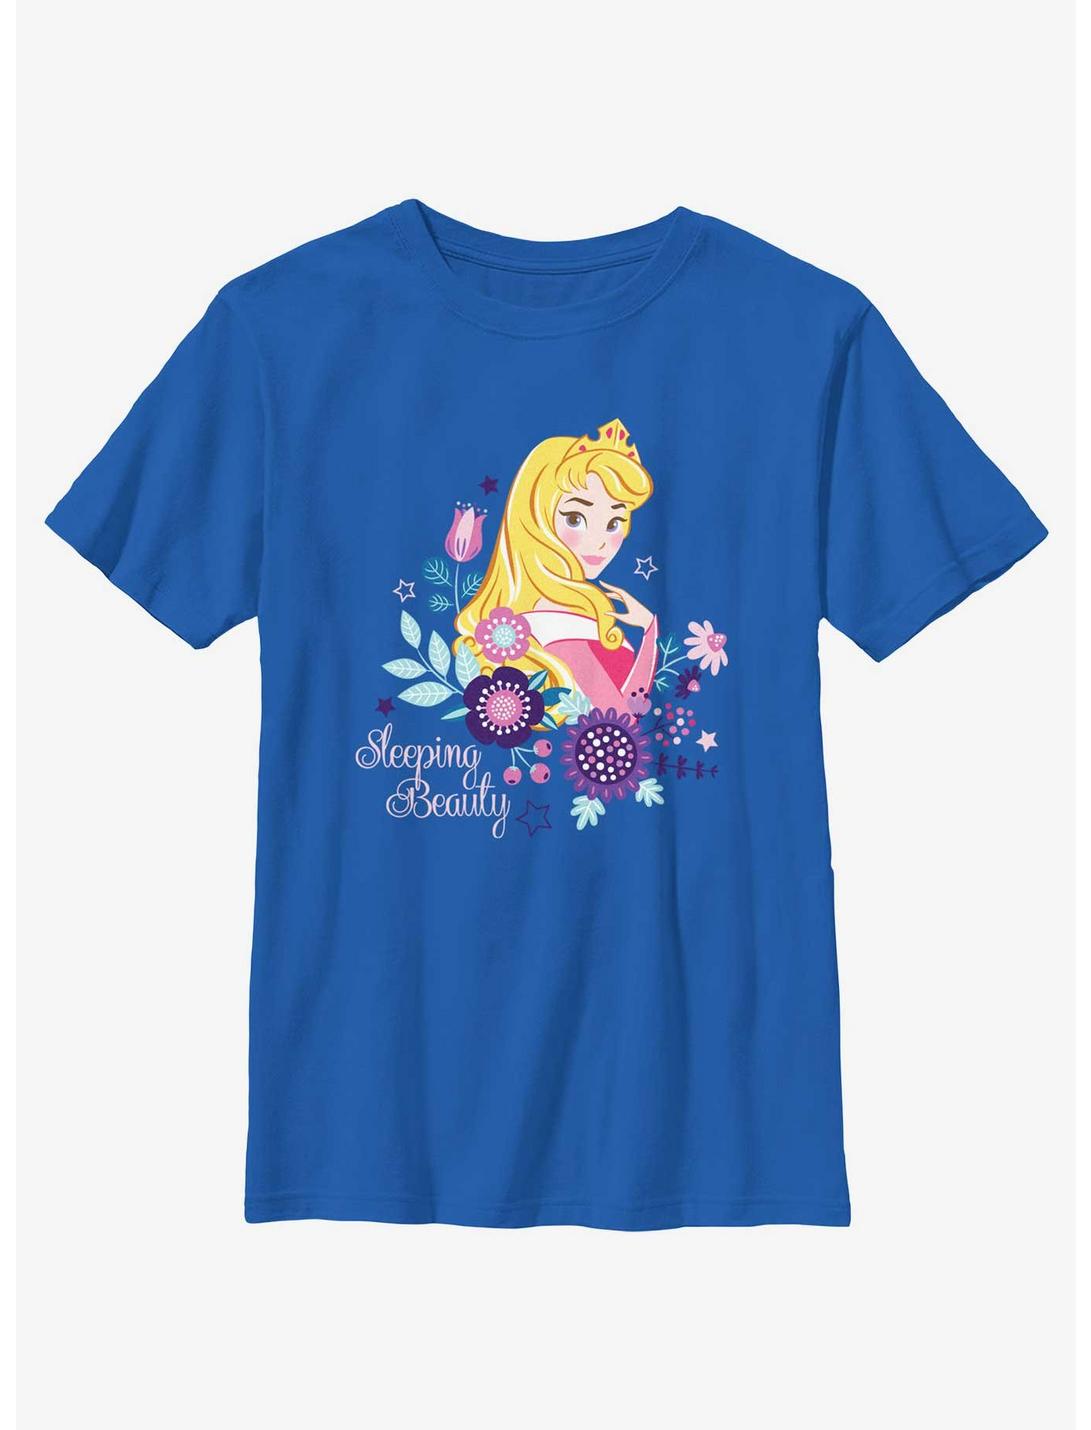 Disney Princesses Sleeping Beauty Aurora Youth T-Shirt, ROYAL, hi-res